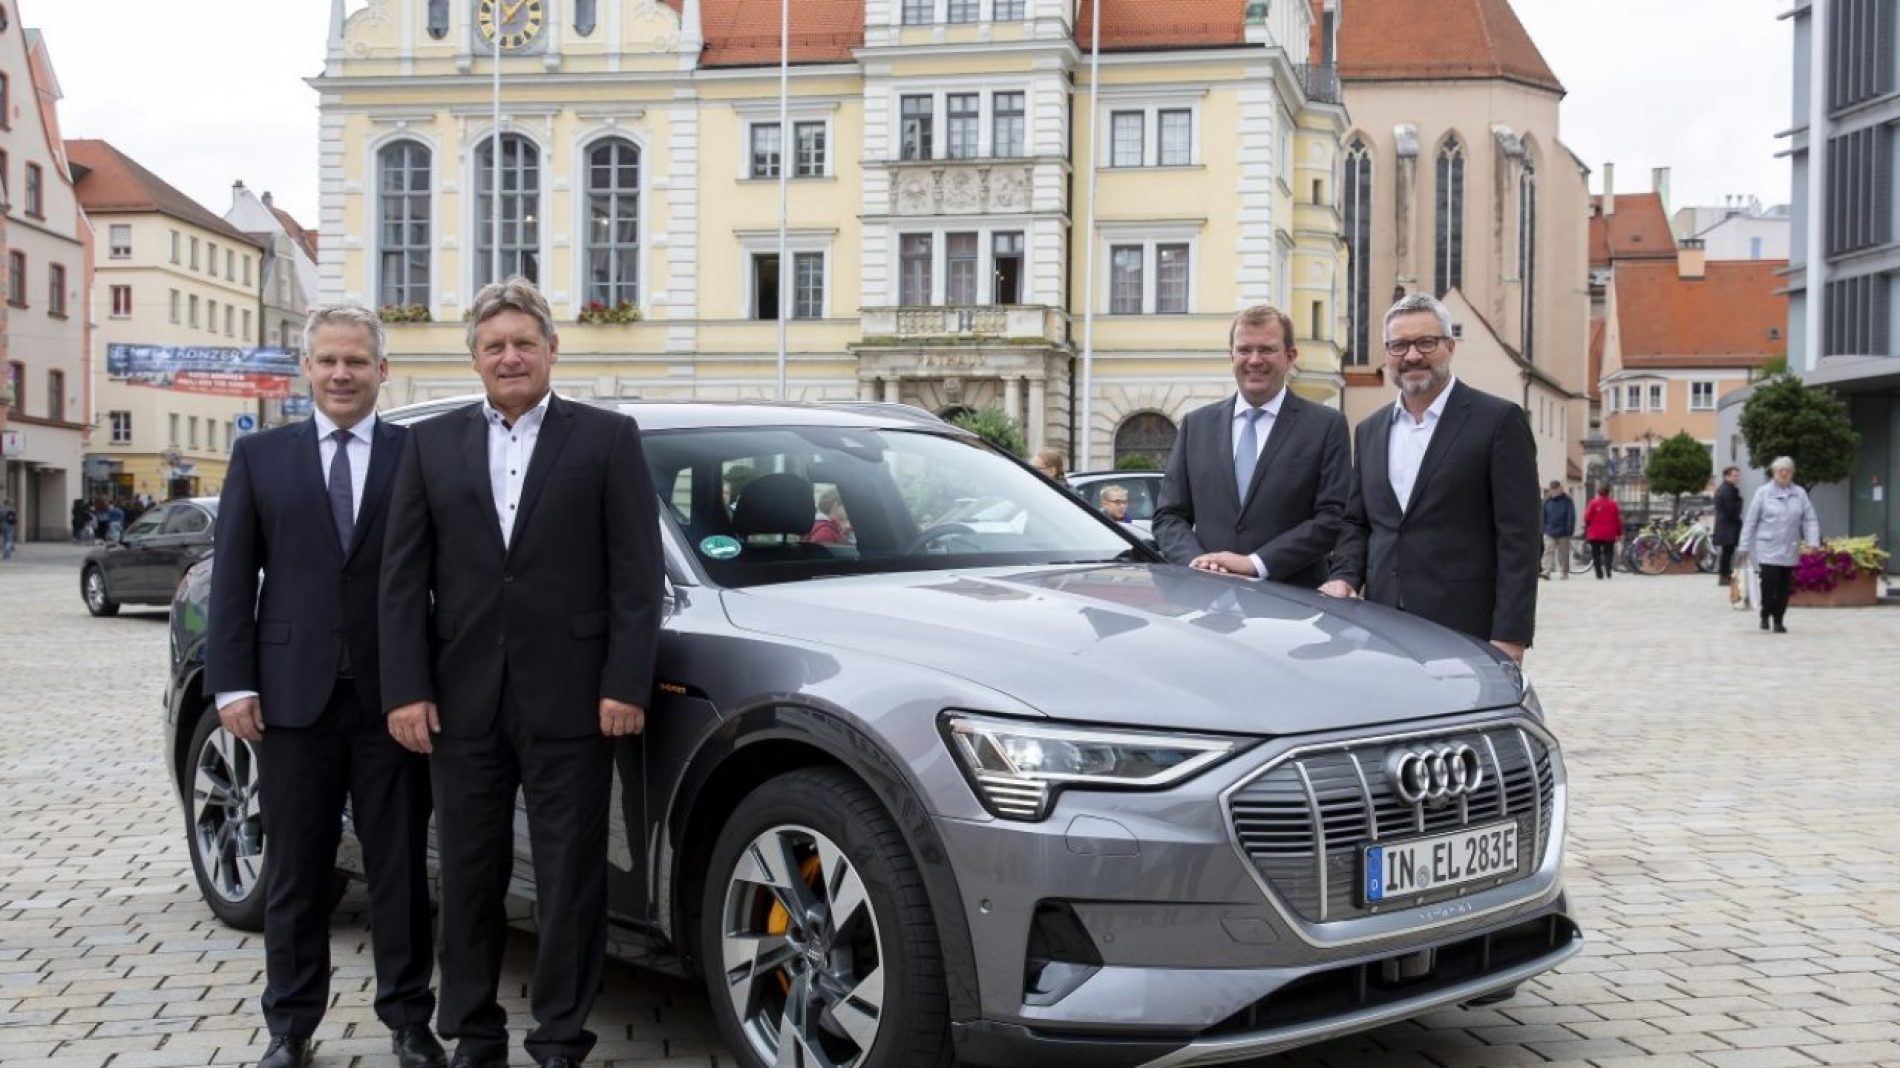 Mobilité urbaine : Audi, la ville d’Ingolstadt et DeutscheTelekom coopèrent sur la technologie 5G